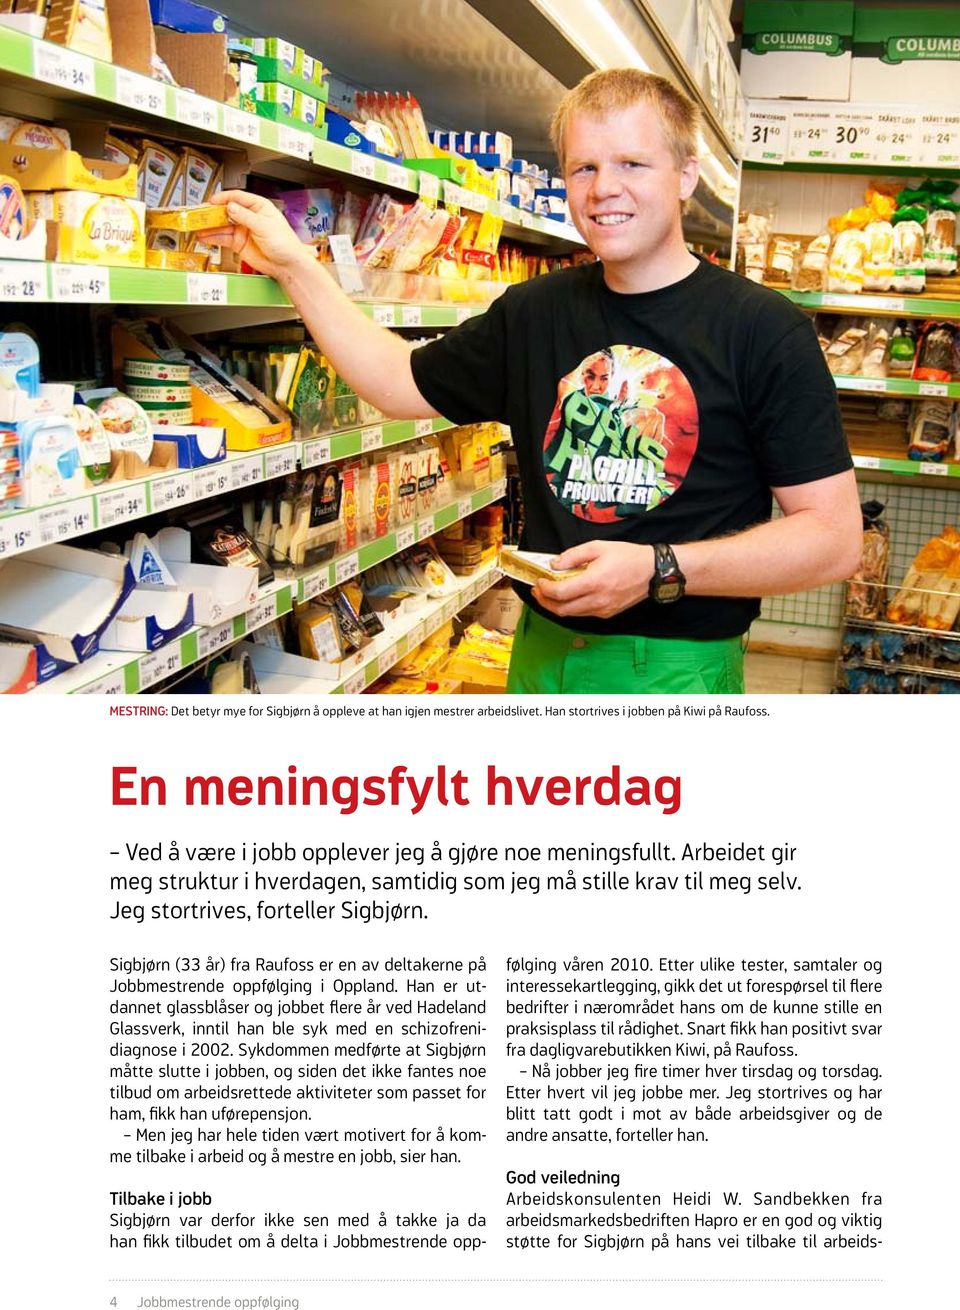 Sigbjørn (33 år) fra Raufoss er en av deltakerne på Jobbmestrende oppfølging i Oppland.